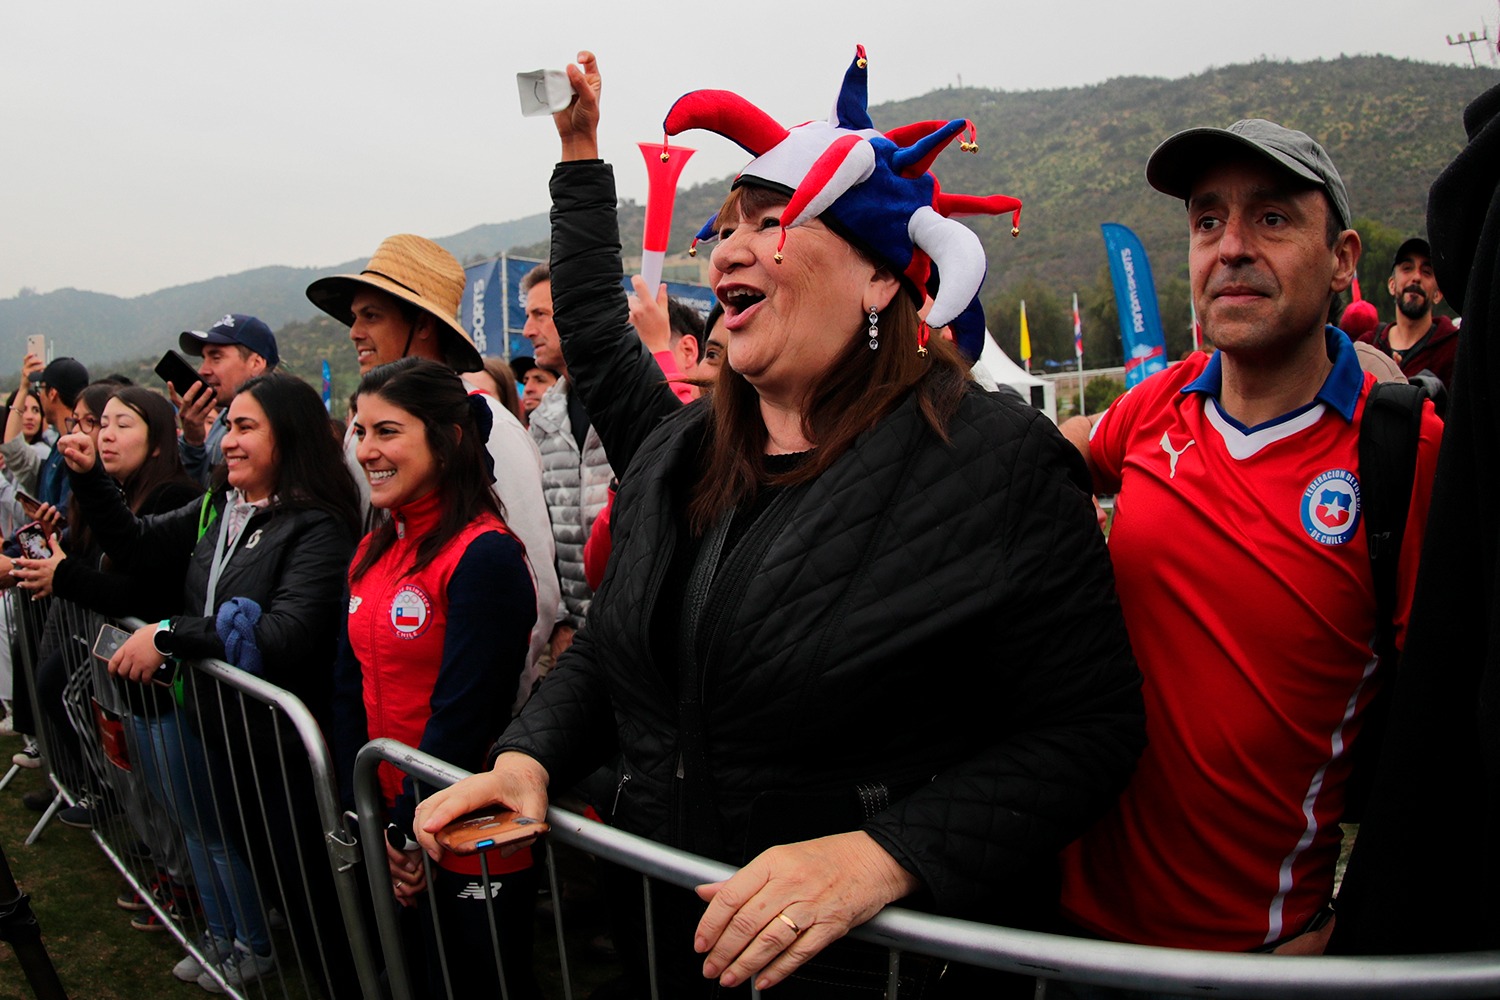 Un Tour de Francia a la chilena: el público salió a la ruta a apoyar al MTB